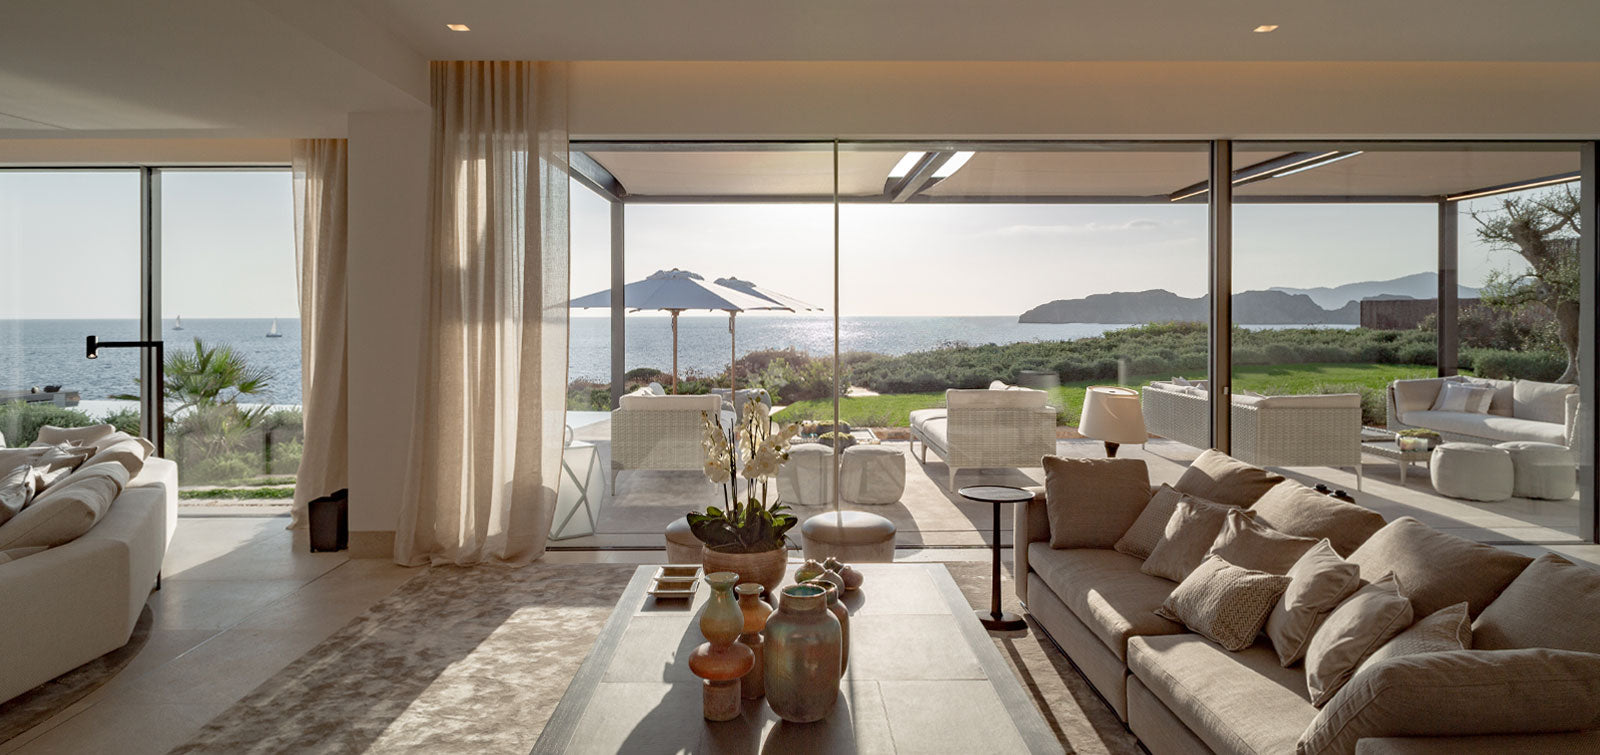 Elegantes Wohnzimmer mit Panoramafenstern und Meerblick